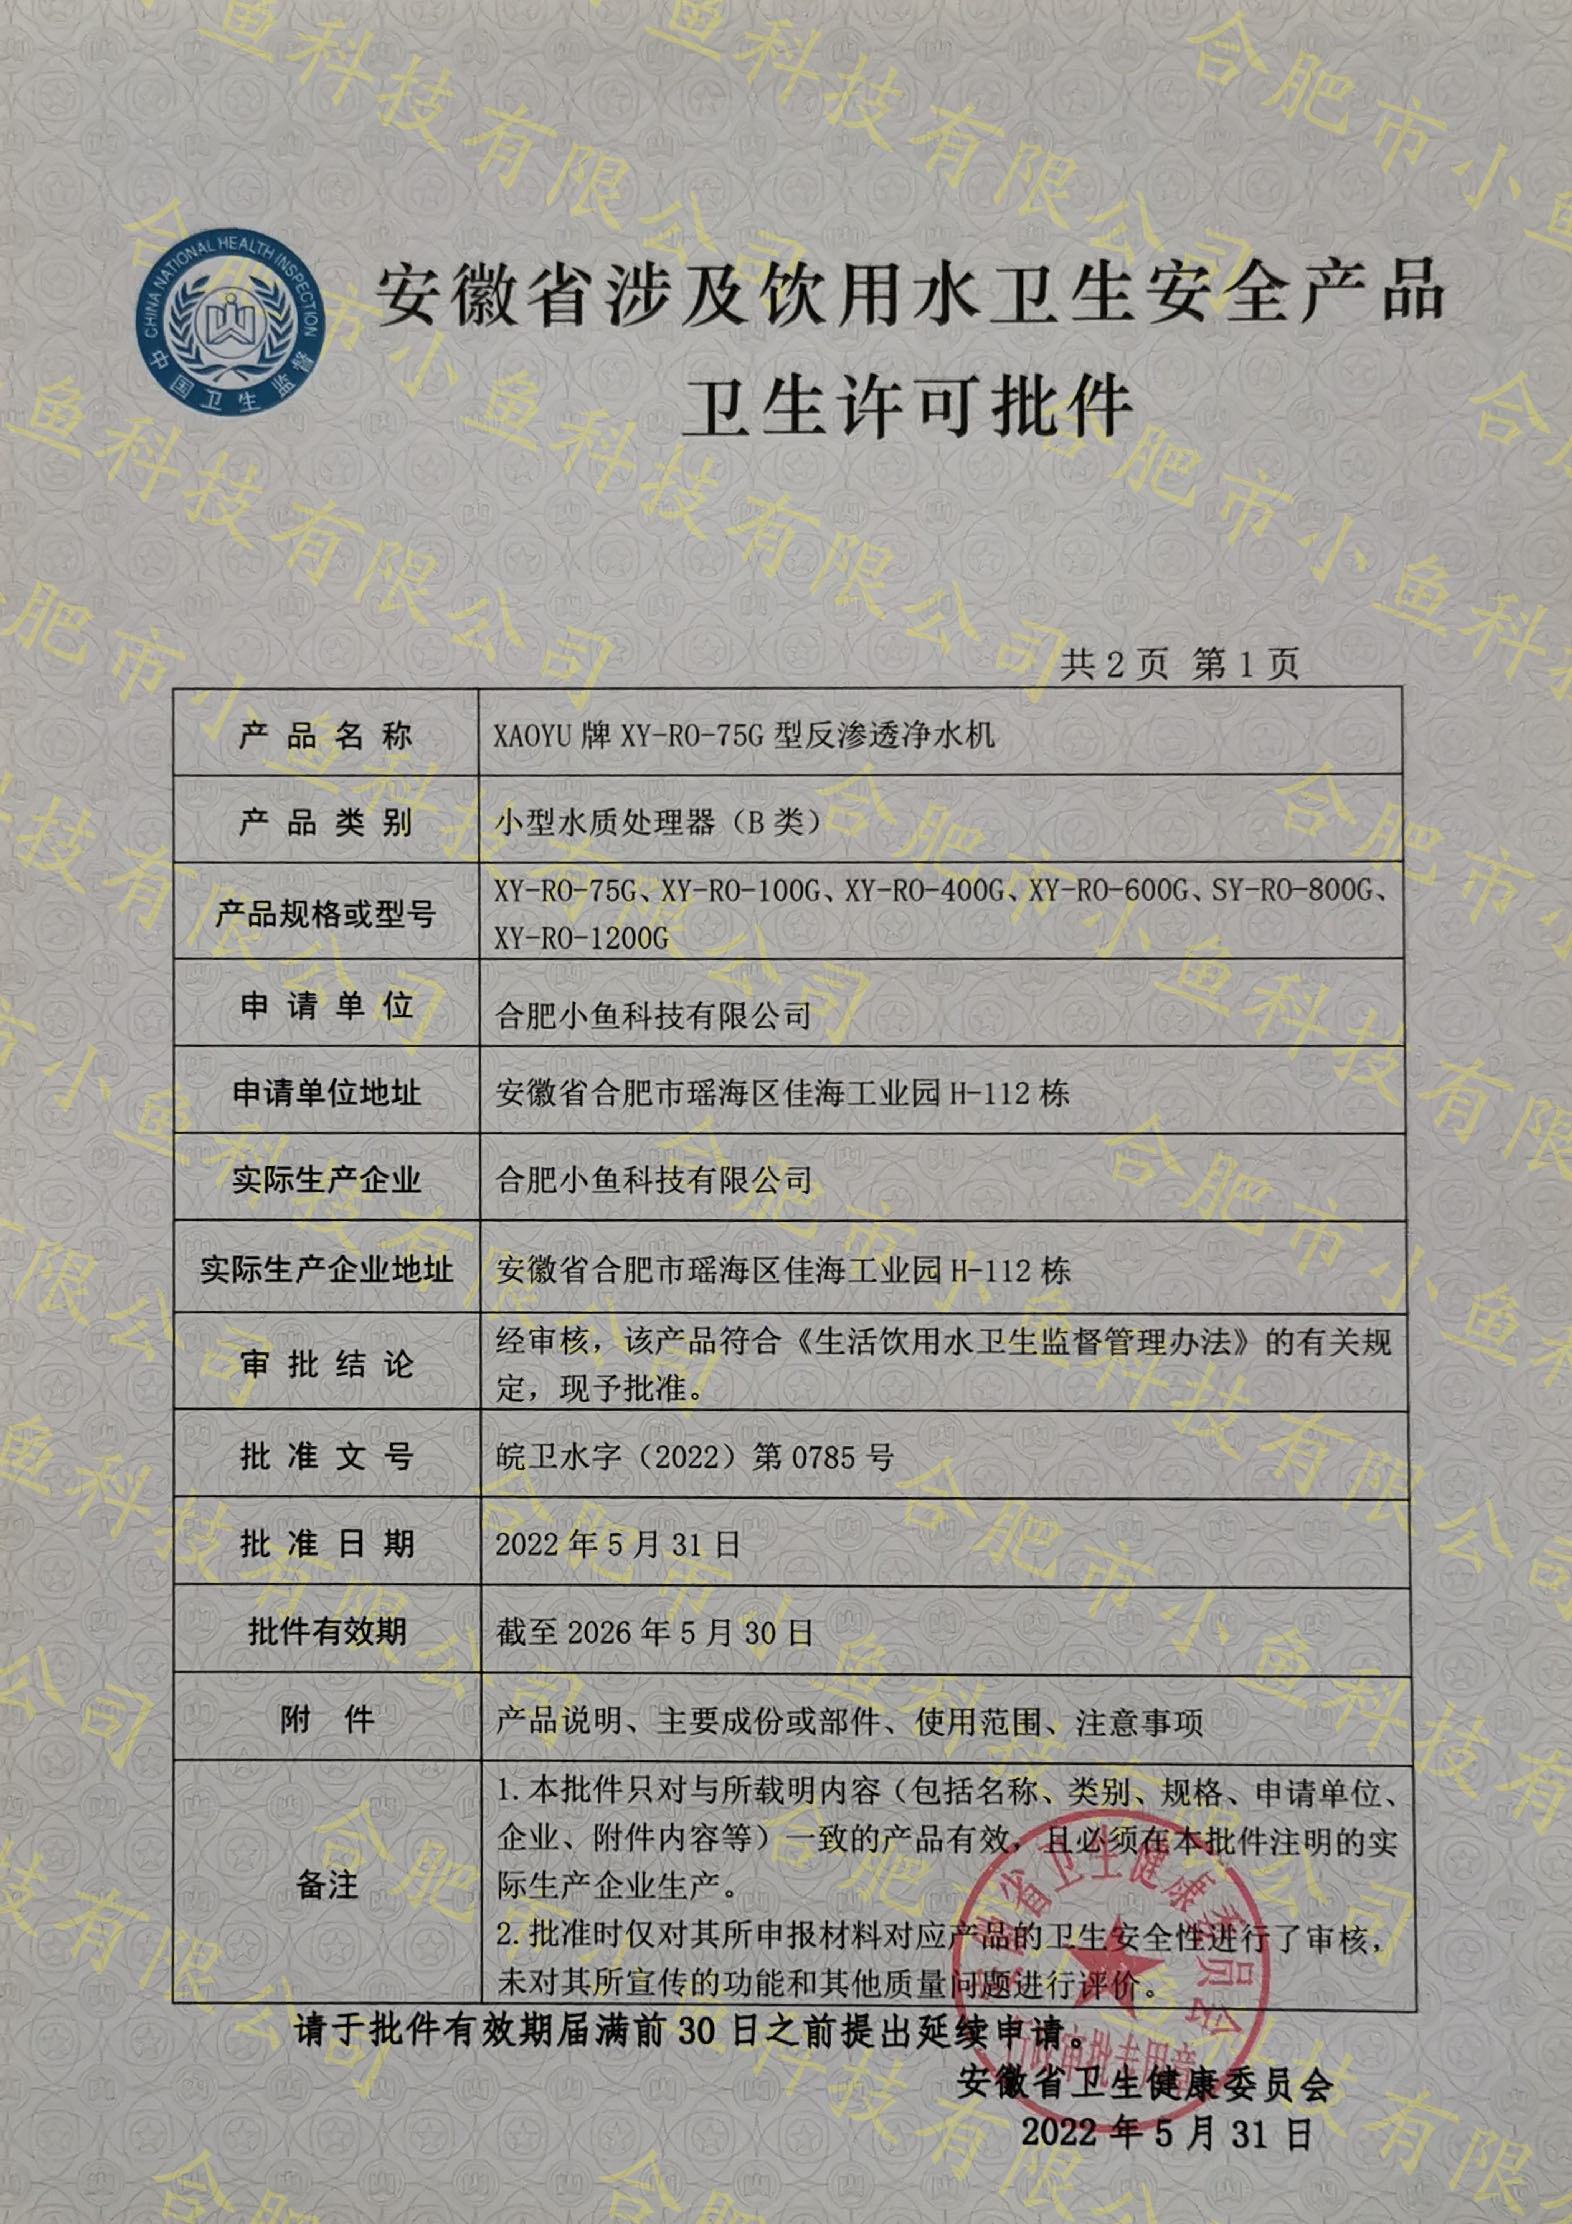 安徽省涉及飲用水衛生安全產品衛生許可批件